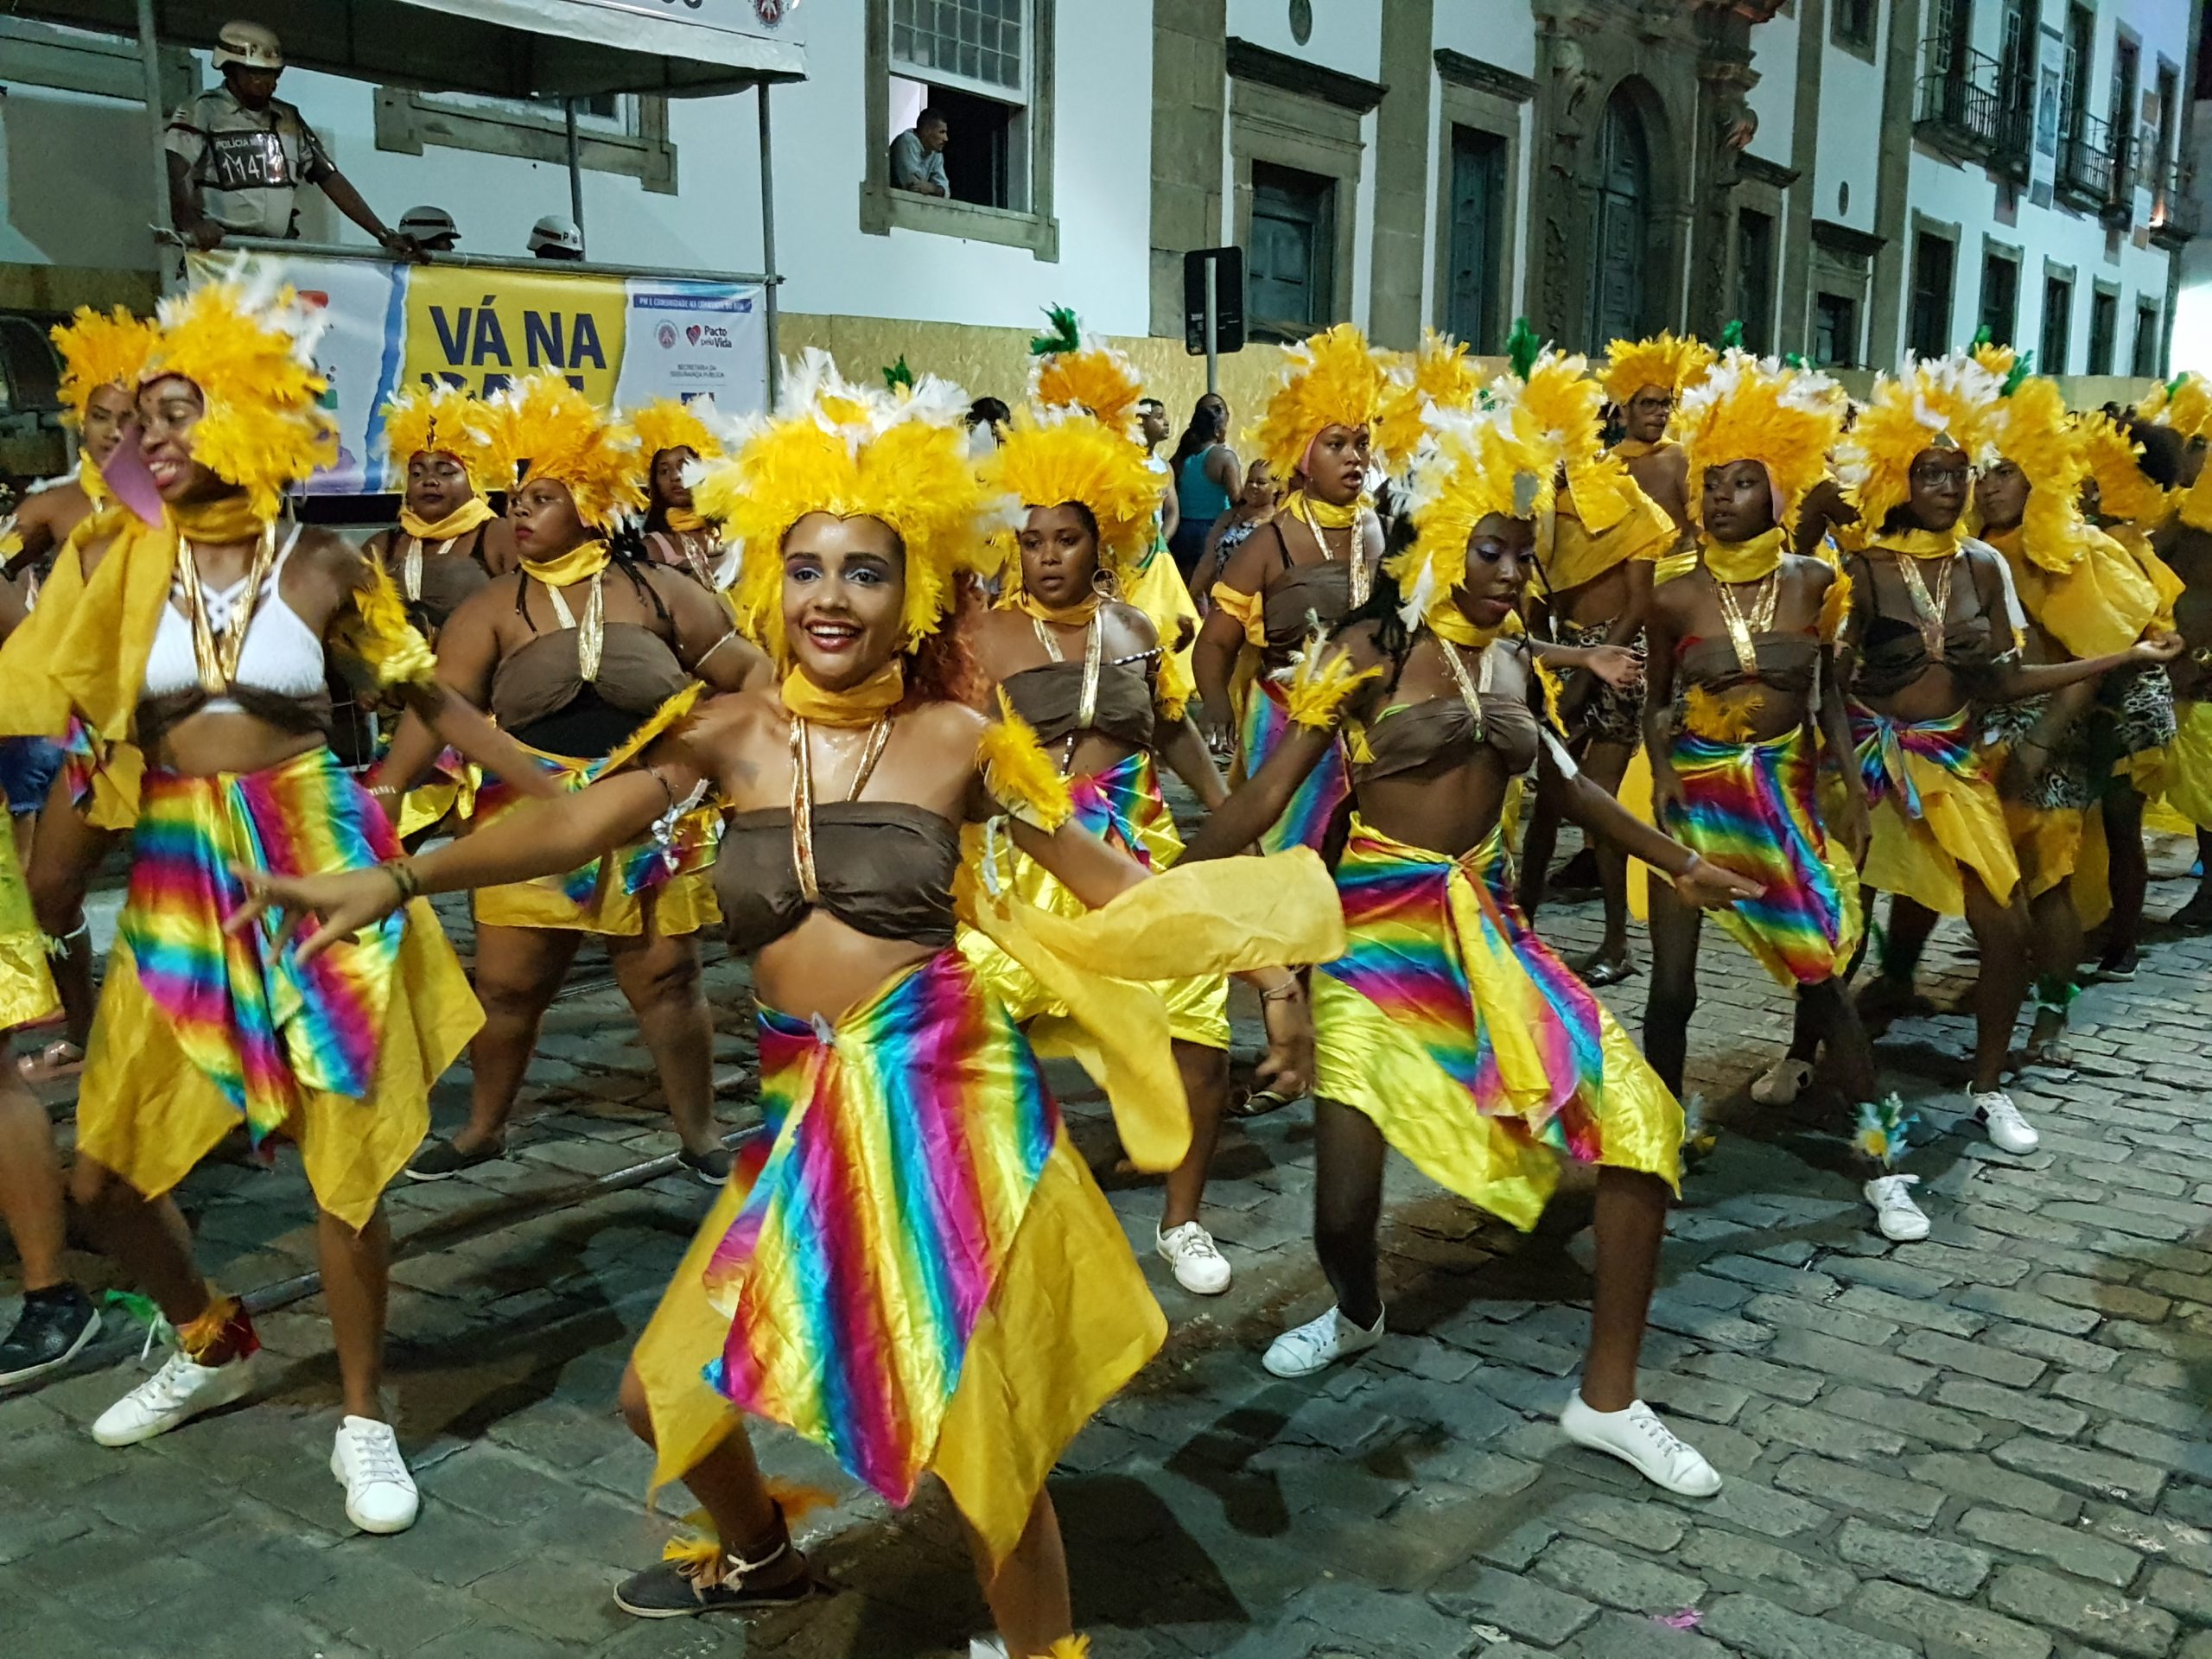 Au fil de l’eau, carnet n° 6 – Brésil / Salvador de Bahia / Carnaval – Février/mars 2019